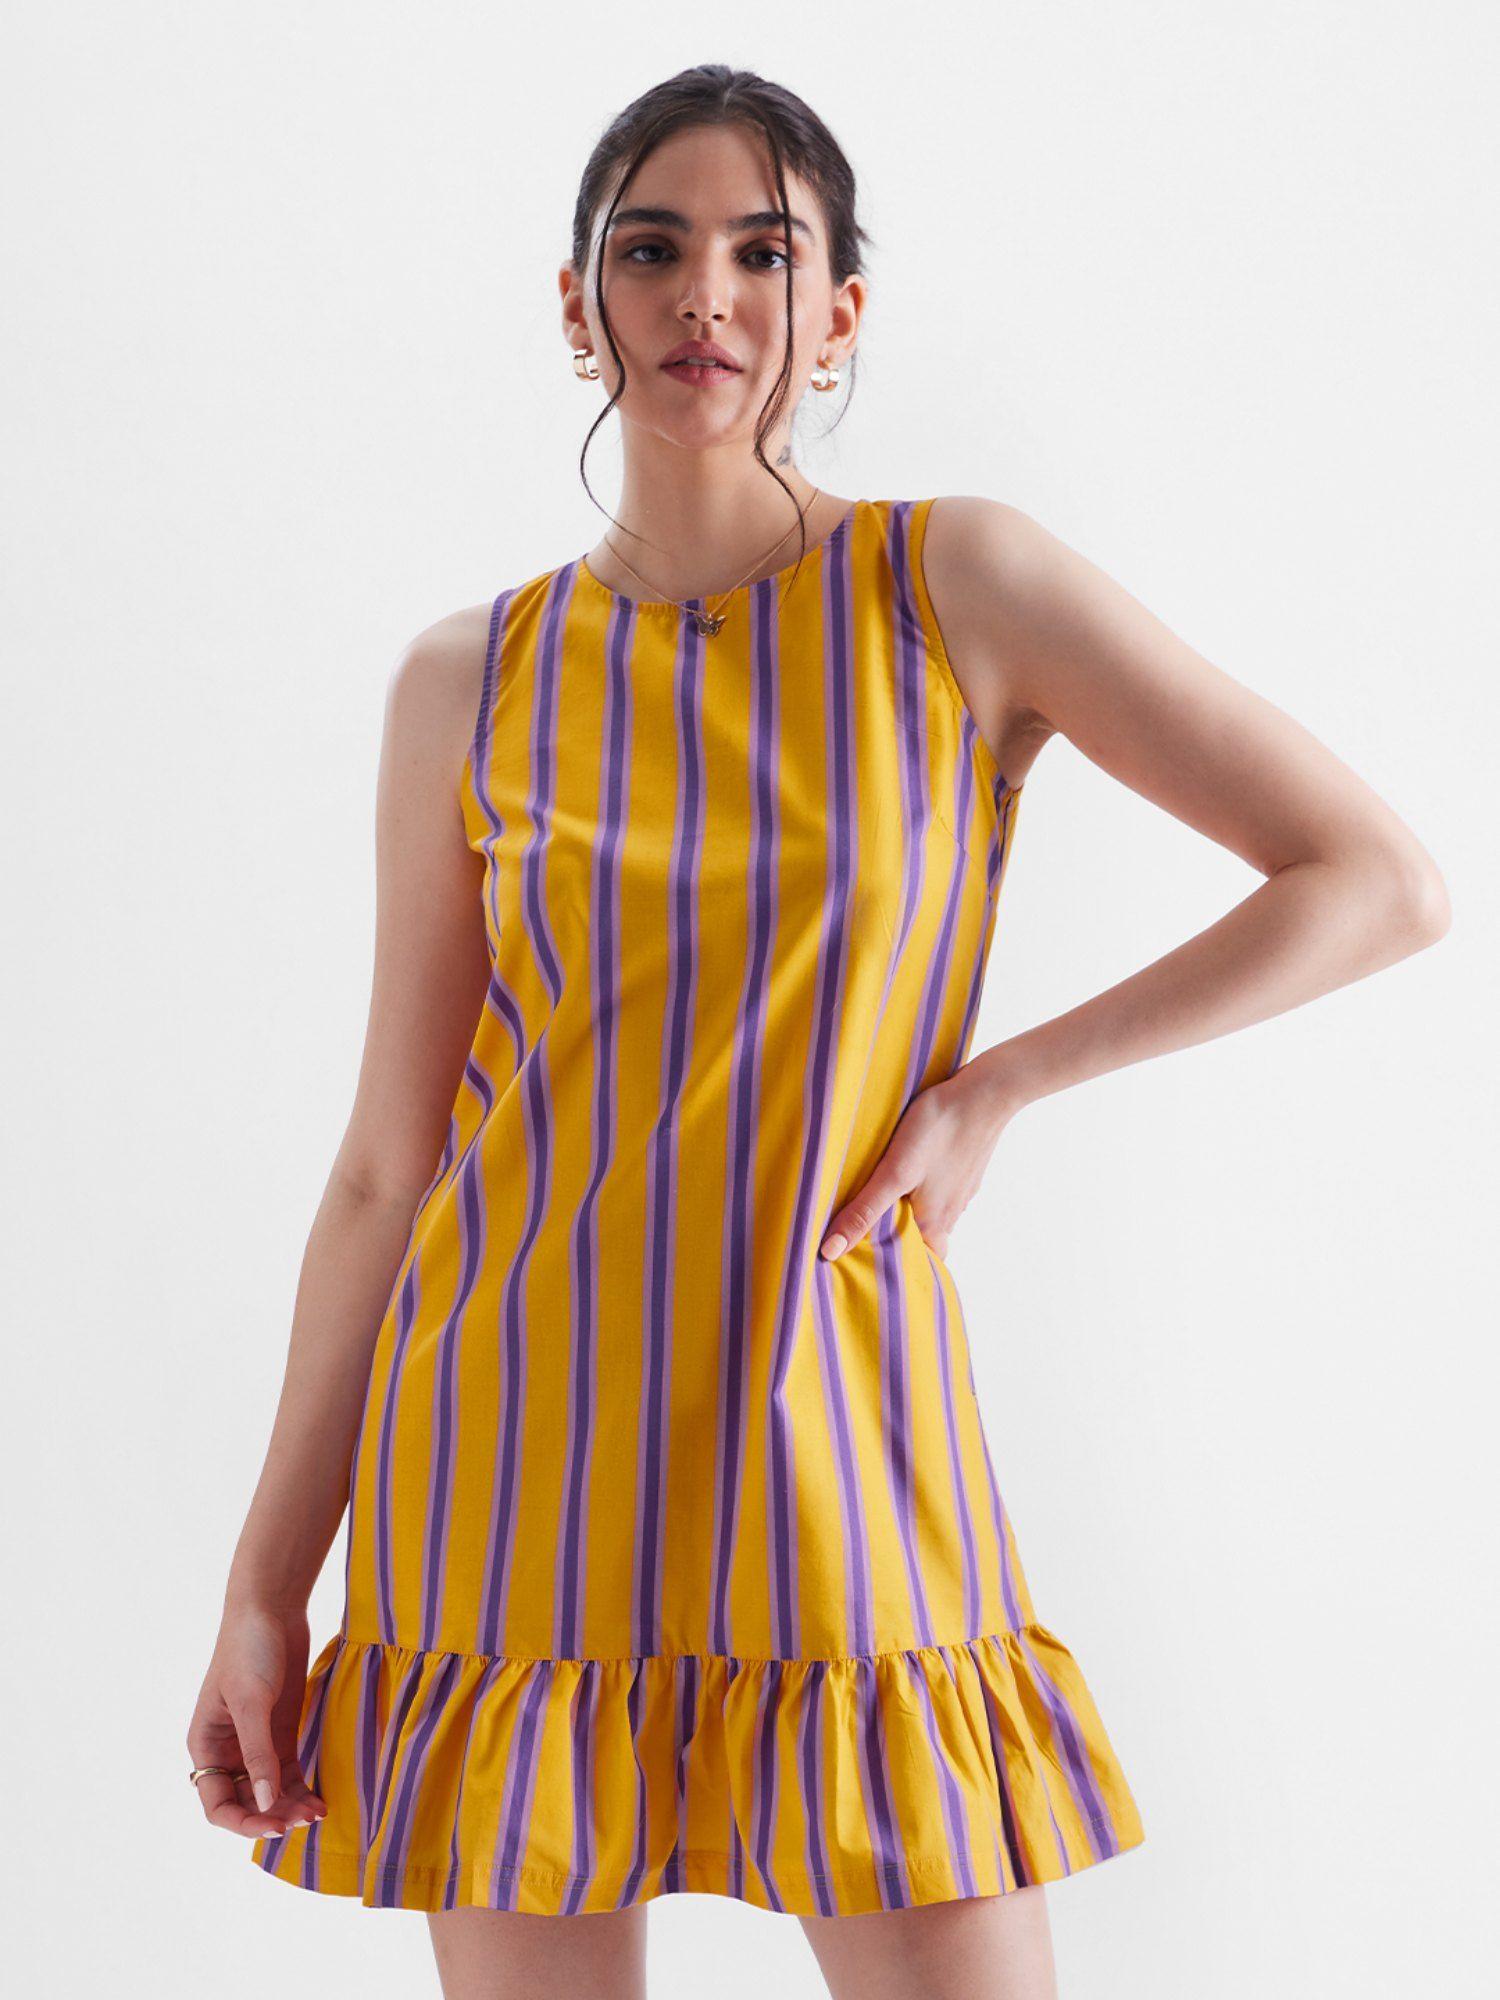 original stripes: laguna and gold dresses for womens